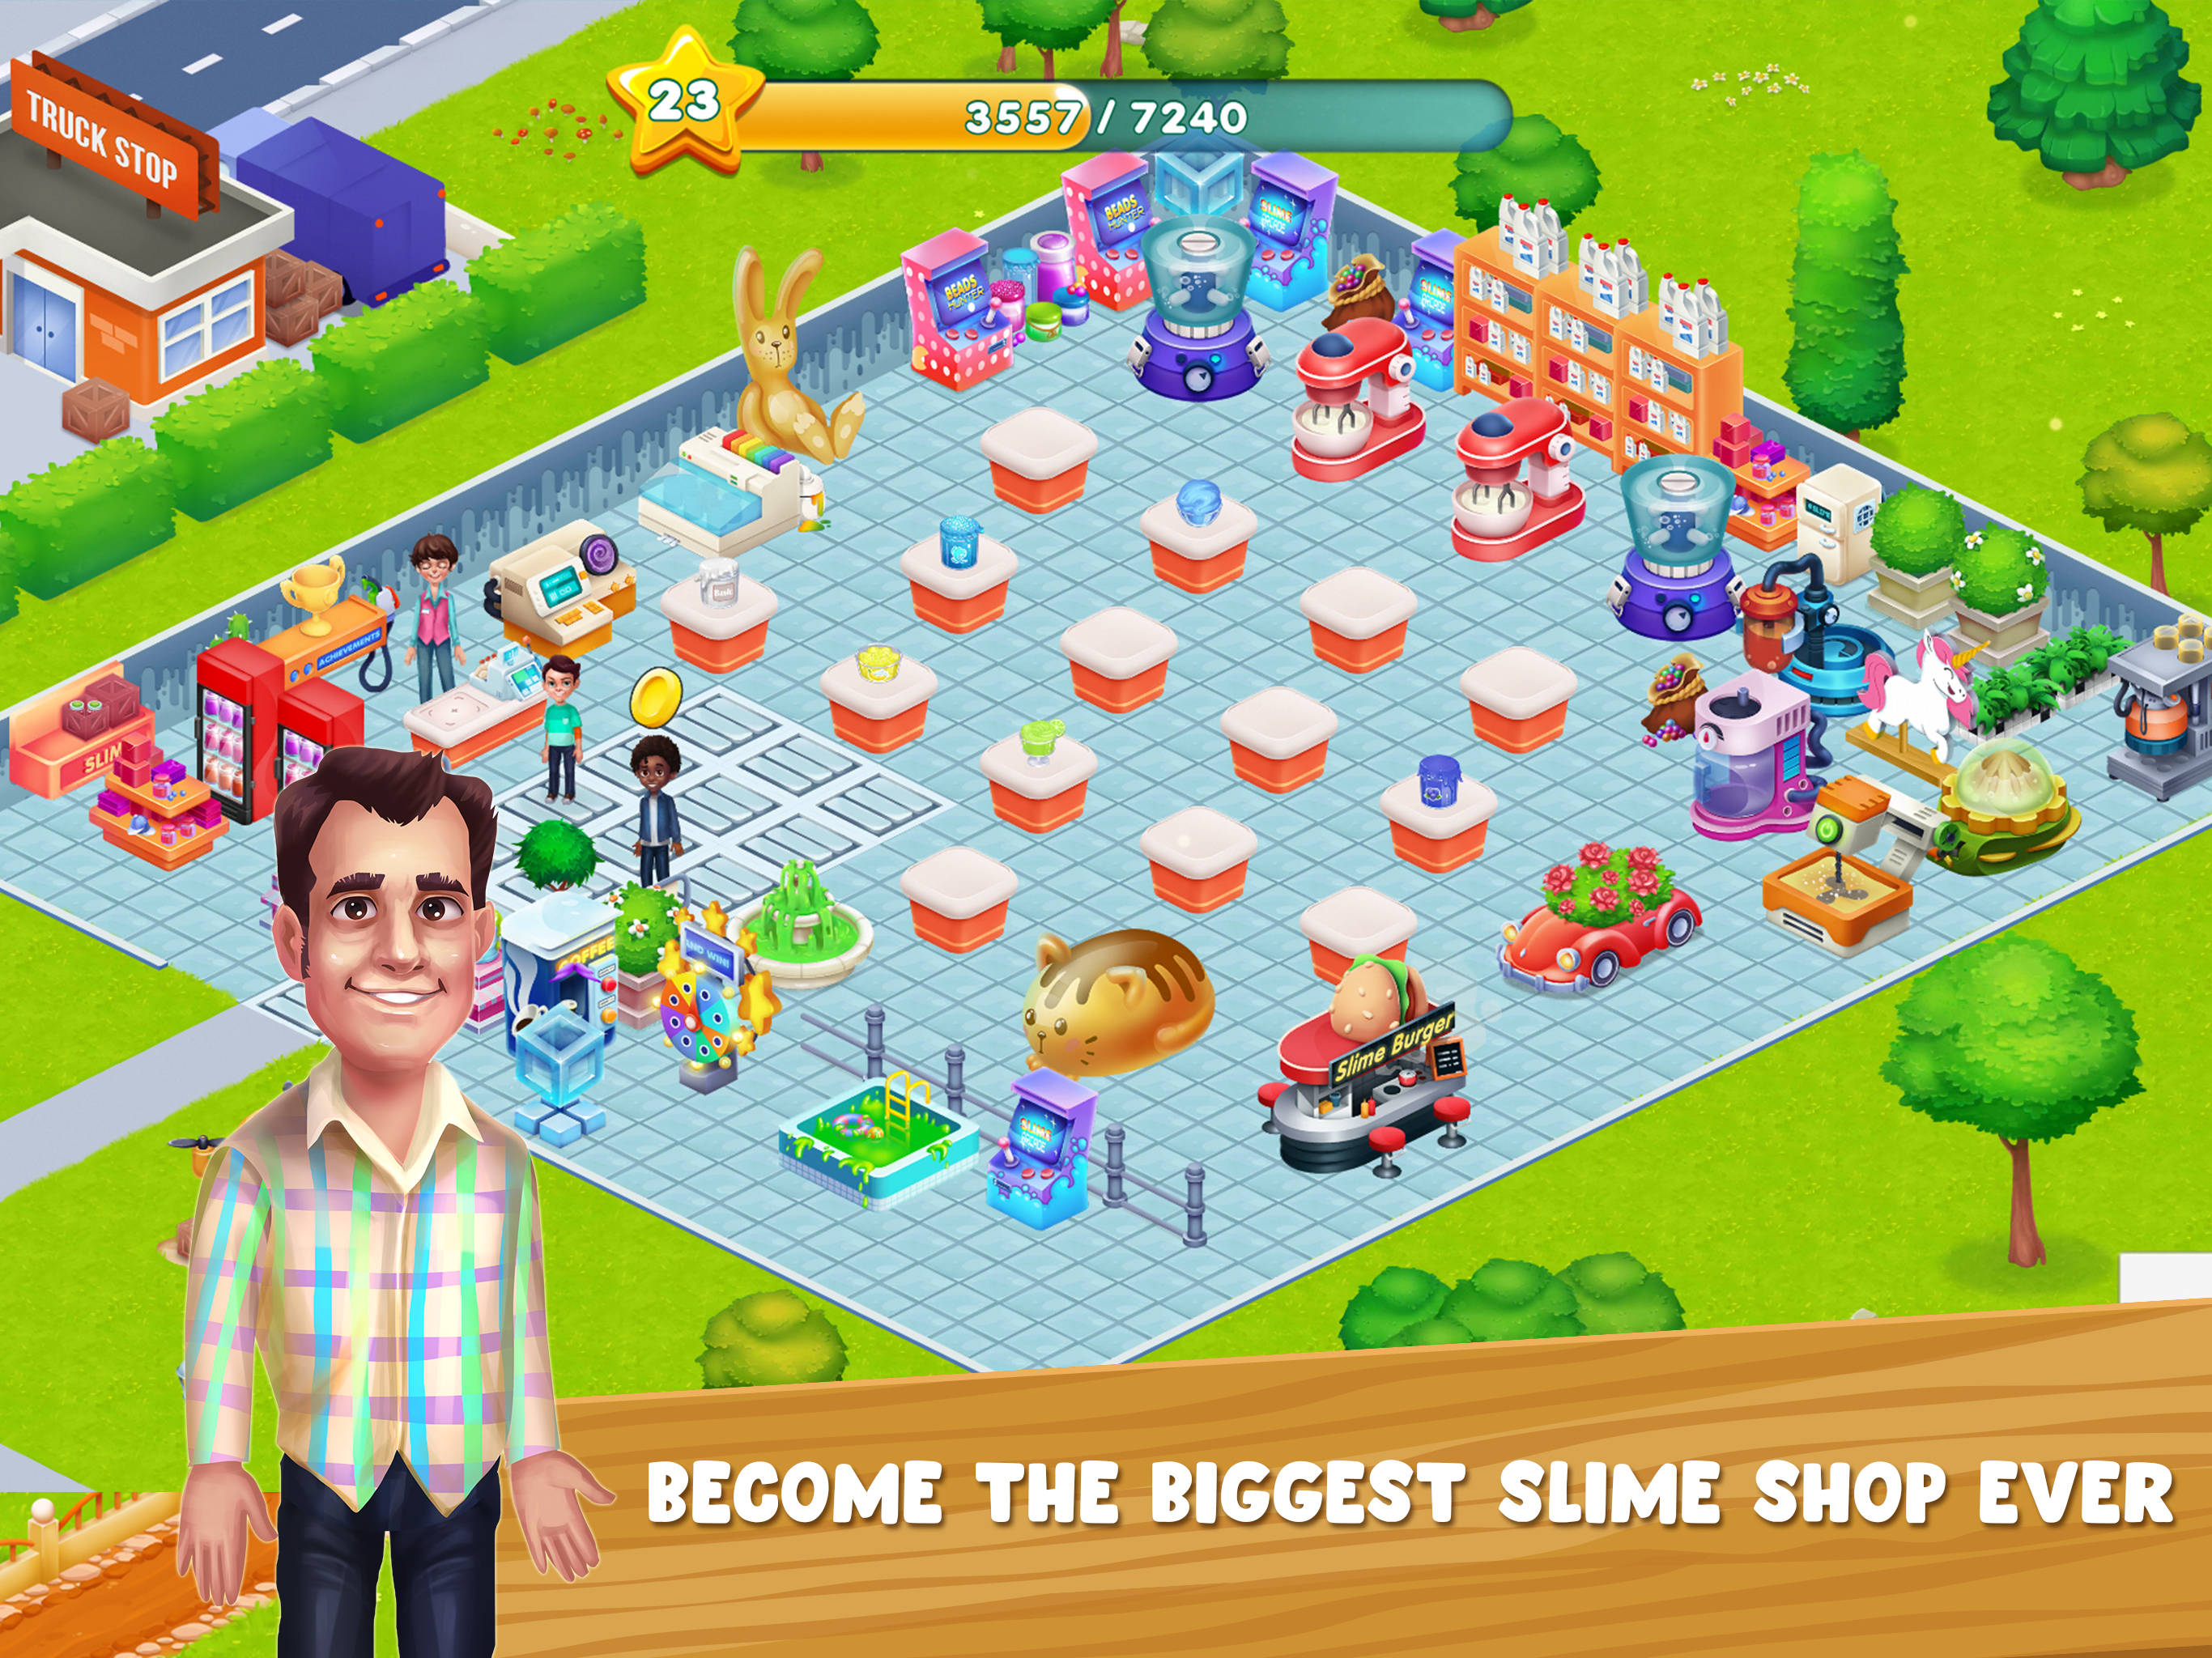 Build a slime shop!